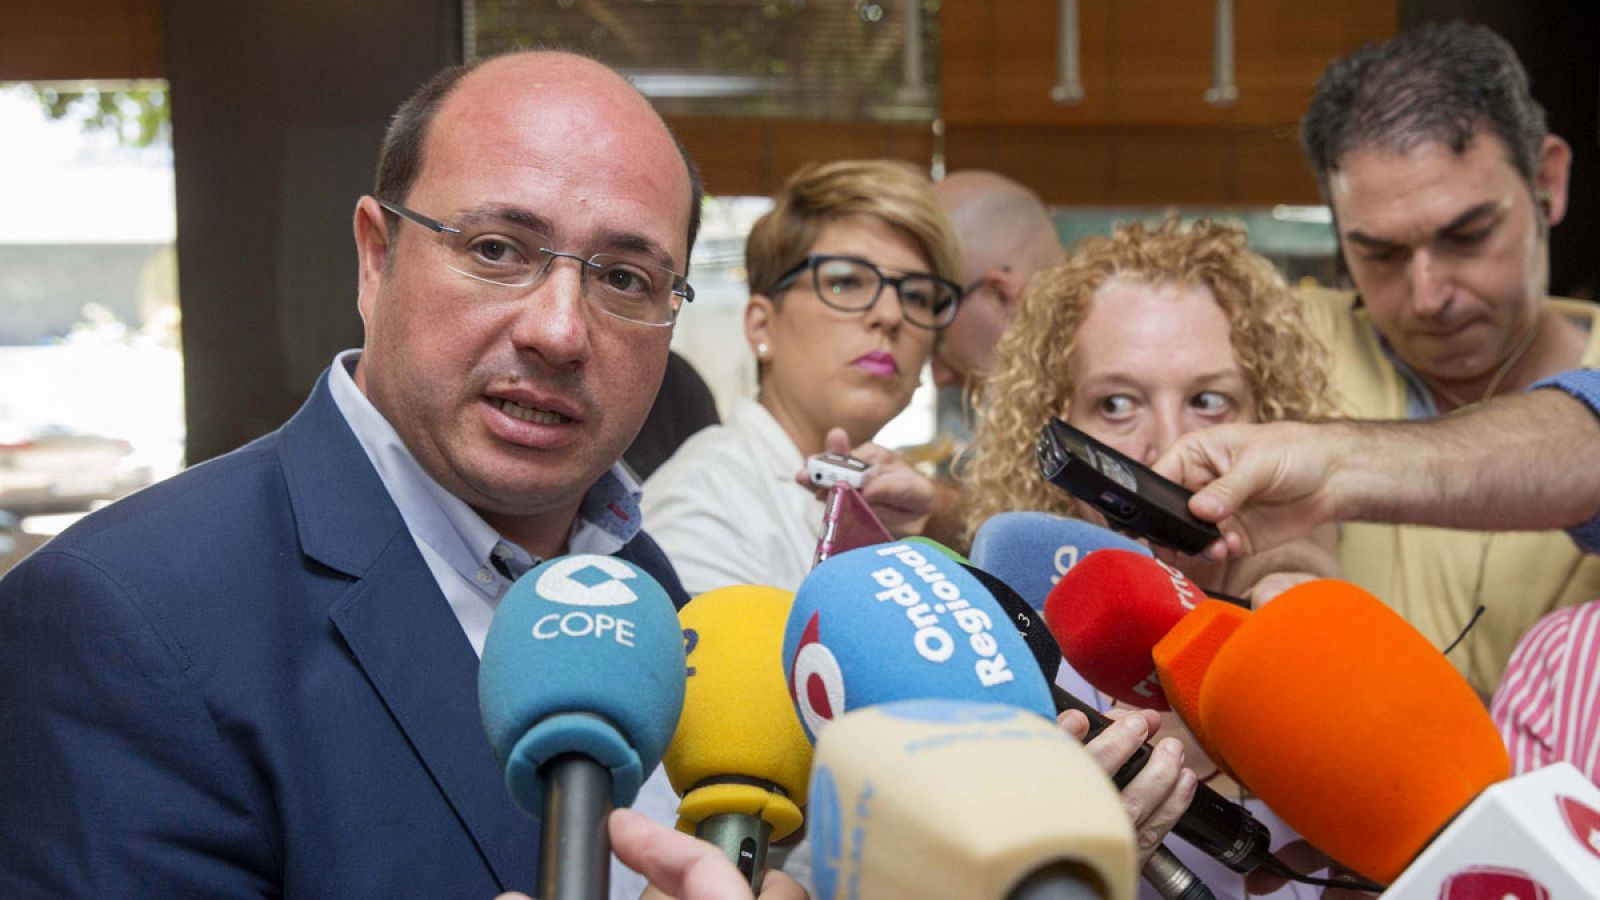 Pedro Antonio Sánchez candidato del PP en Murcia será presidente con apoyo de Ciudadanos